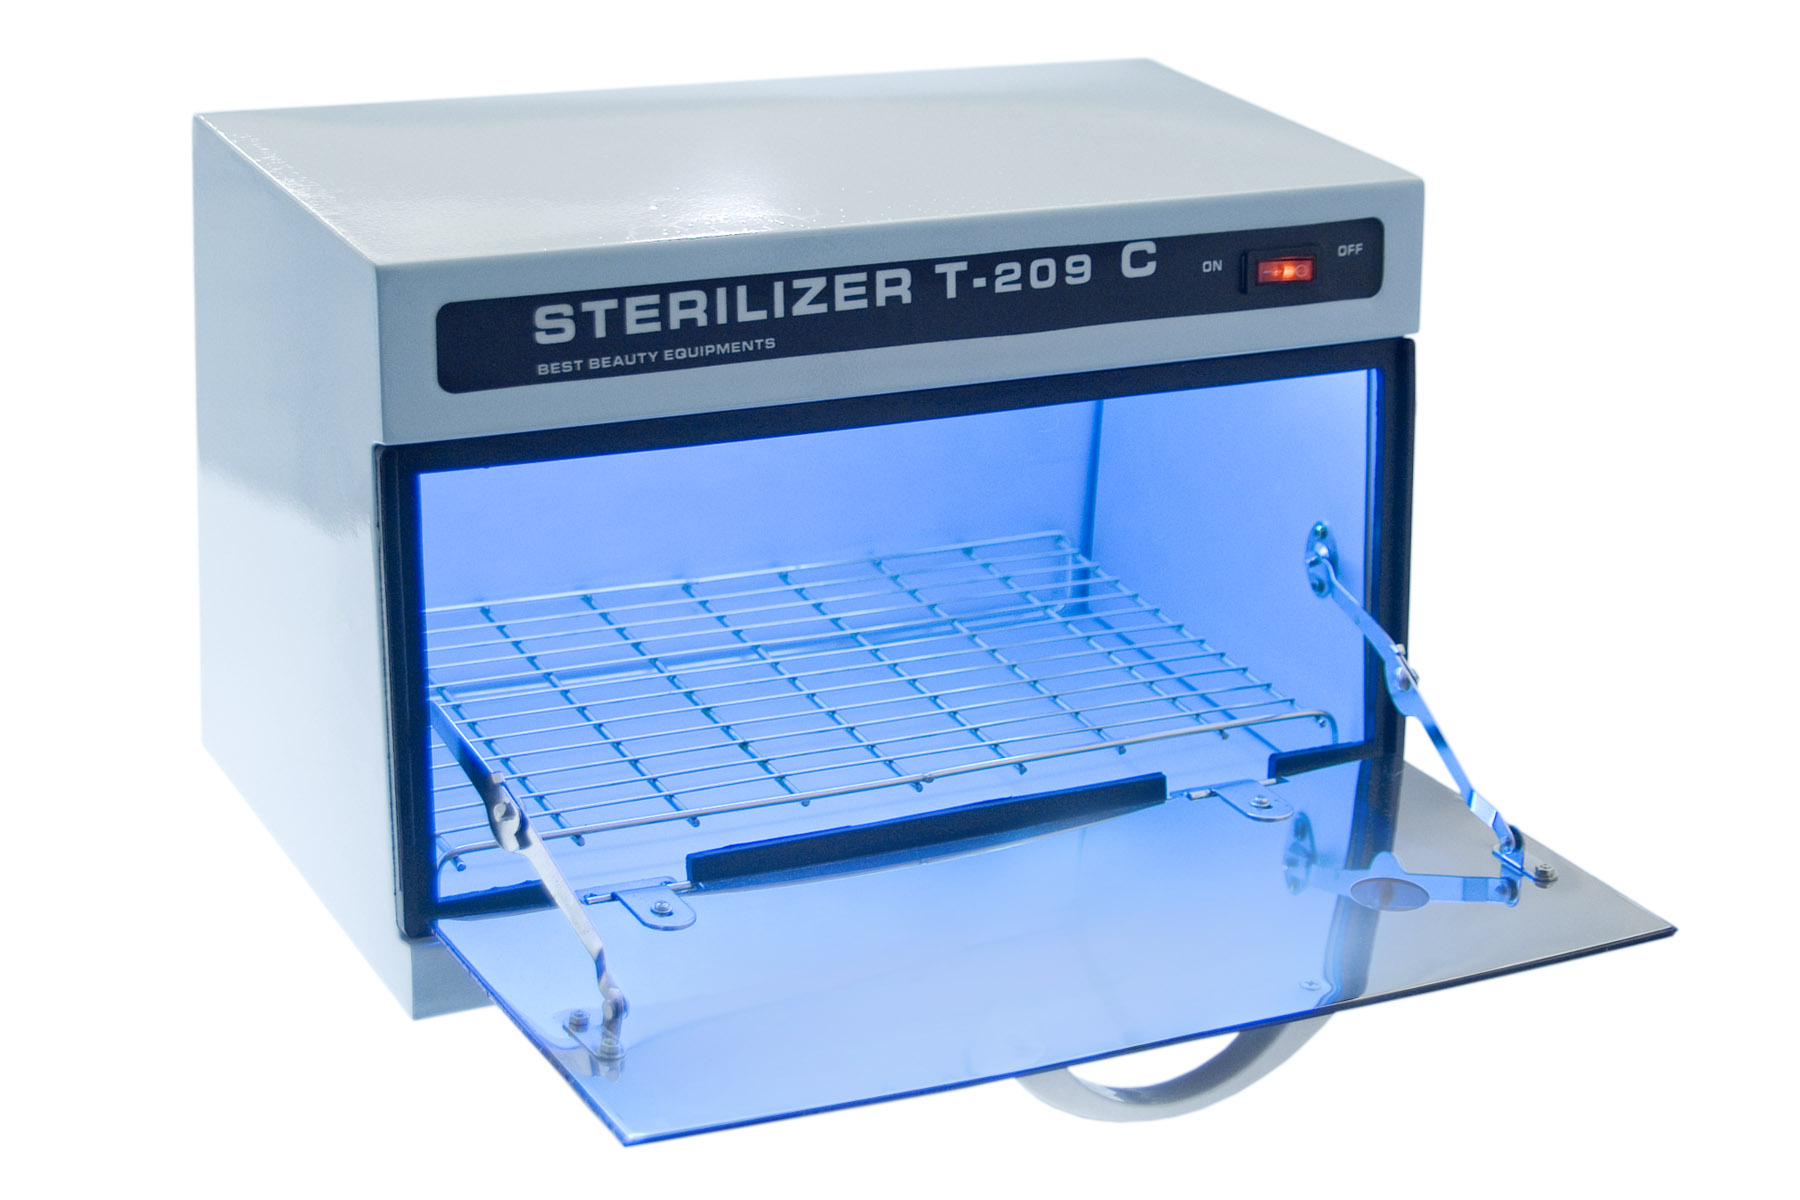 Уф стерилизатор uv. UV Sterilizer для инструментов. УФ стерилизатор Sterilizer. Стерилизатор конвейерный УФ-1100. Sterilizer t-209.